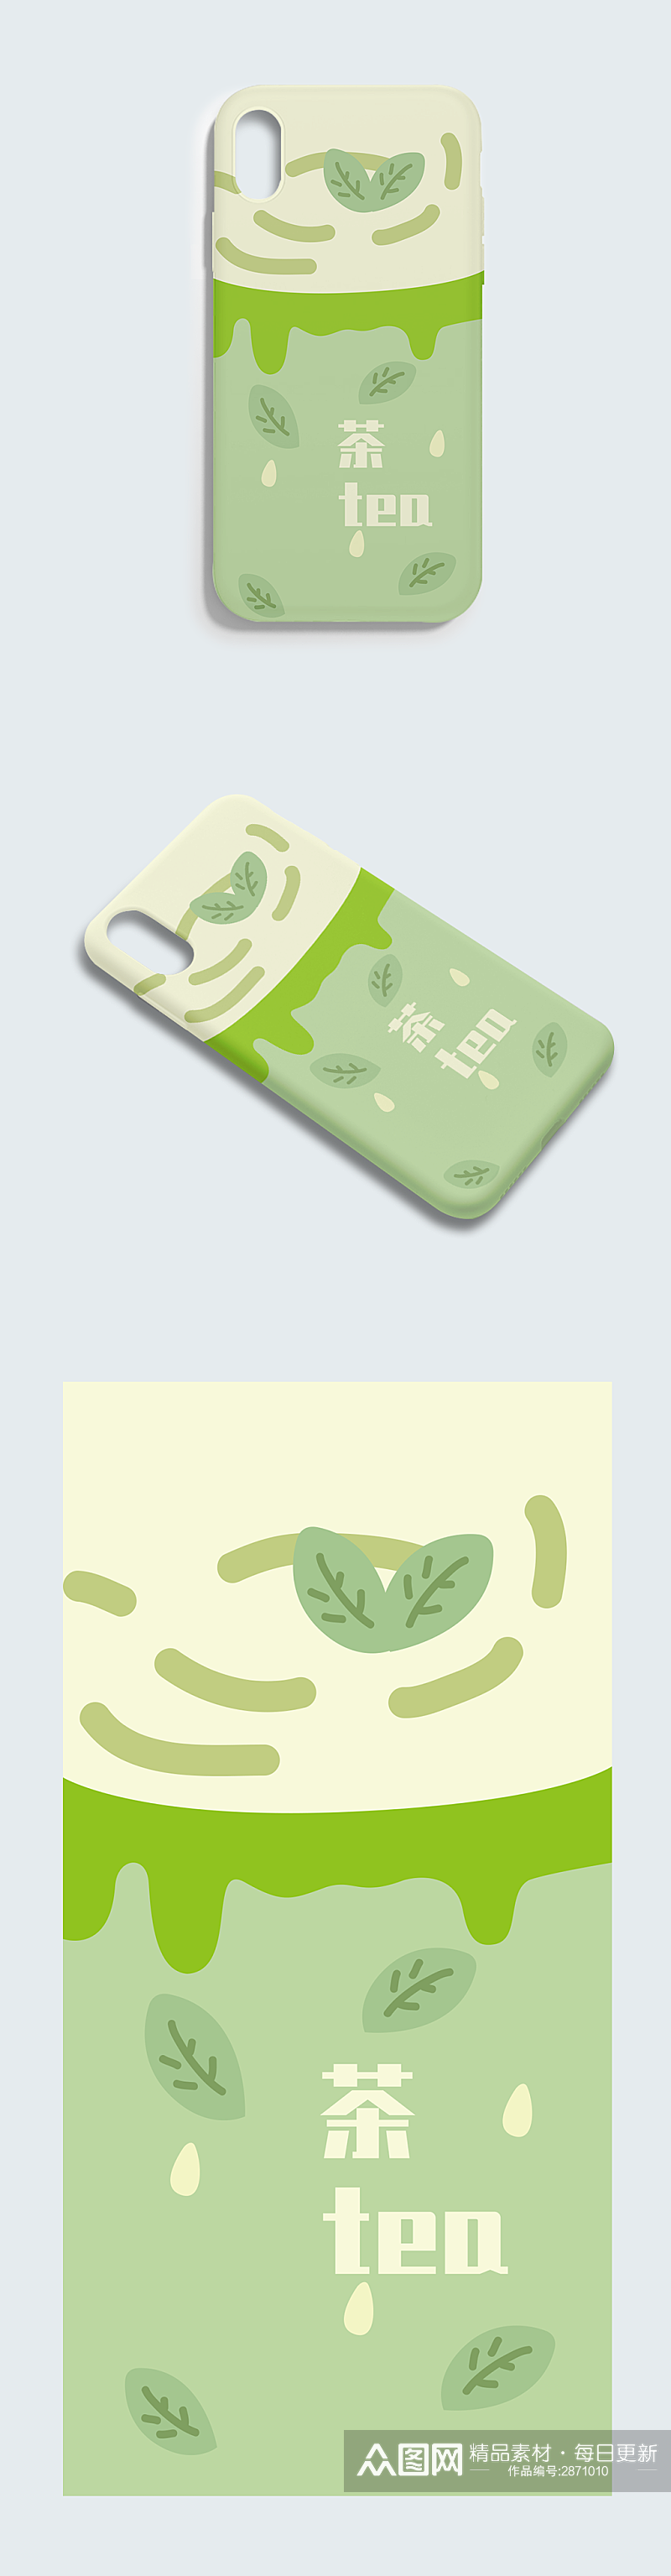 74原创手绘卡通绿色小清新绿茶手机壳素材